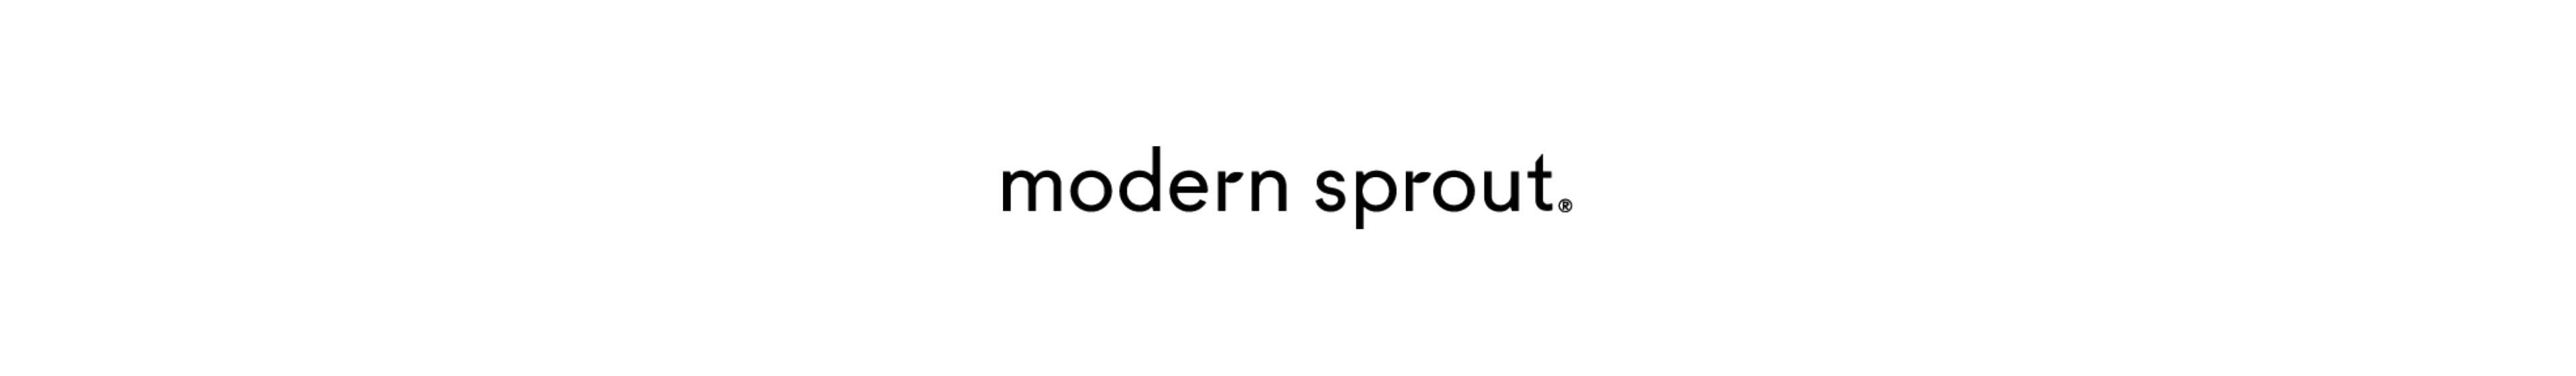 modernsprout